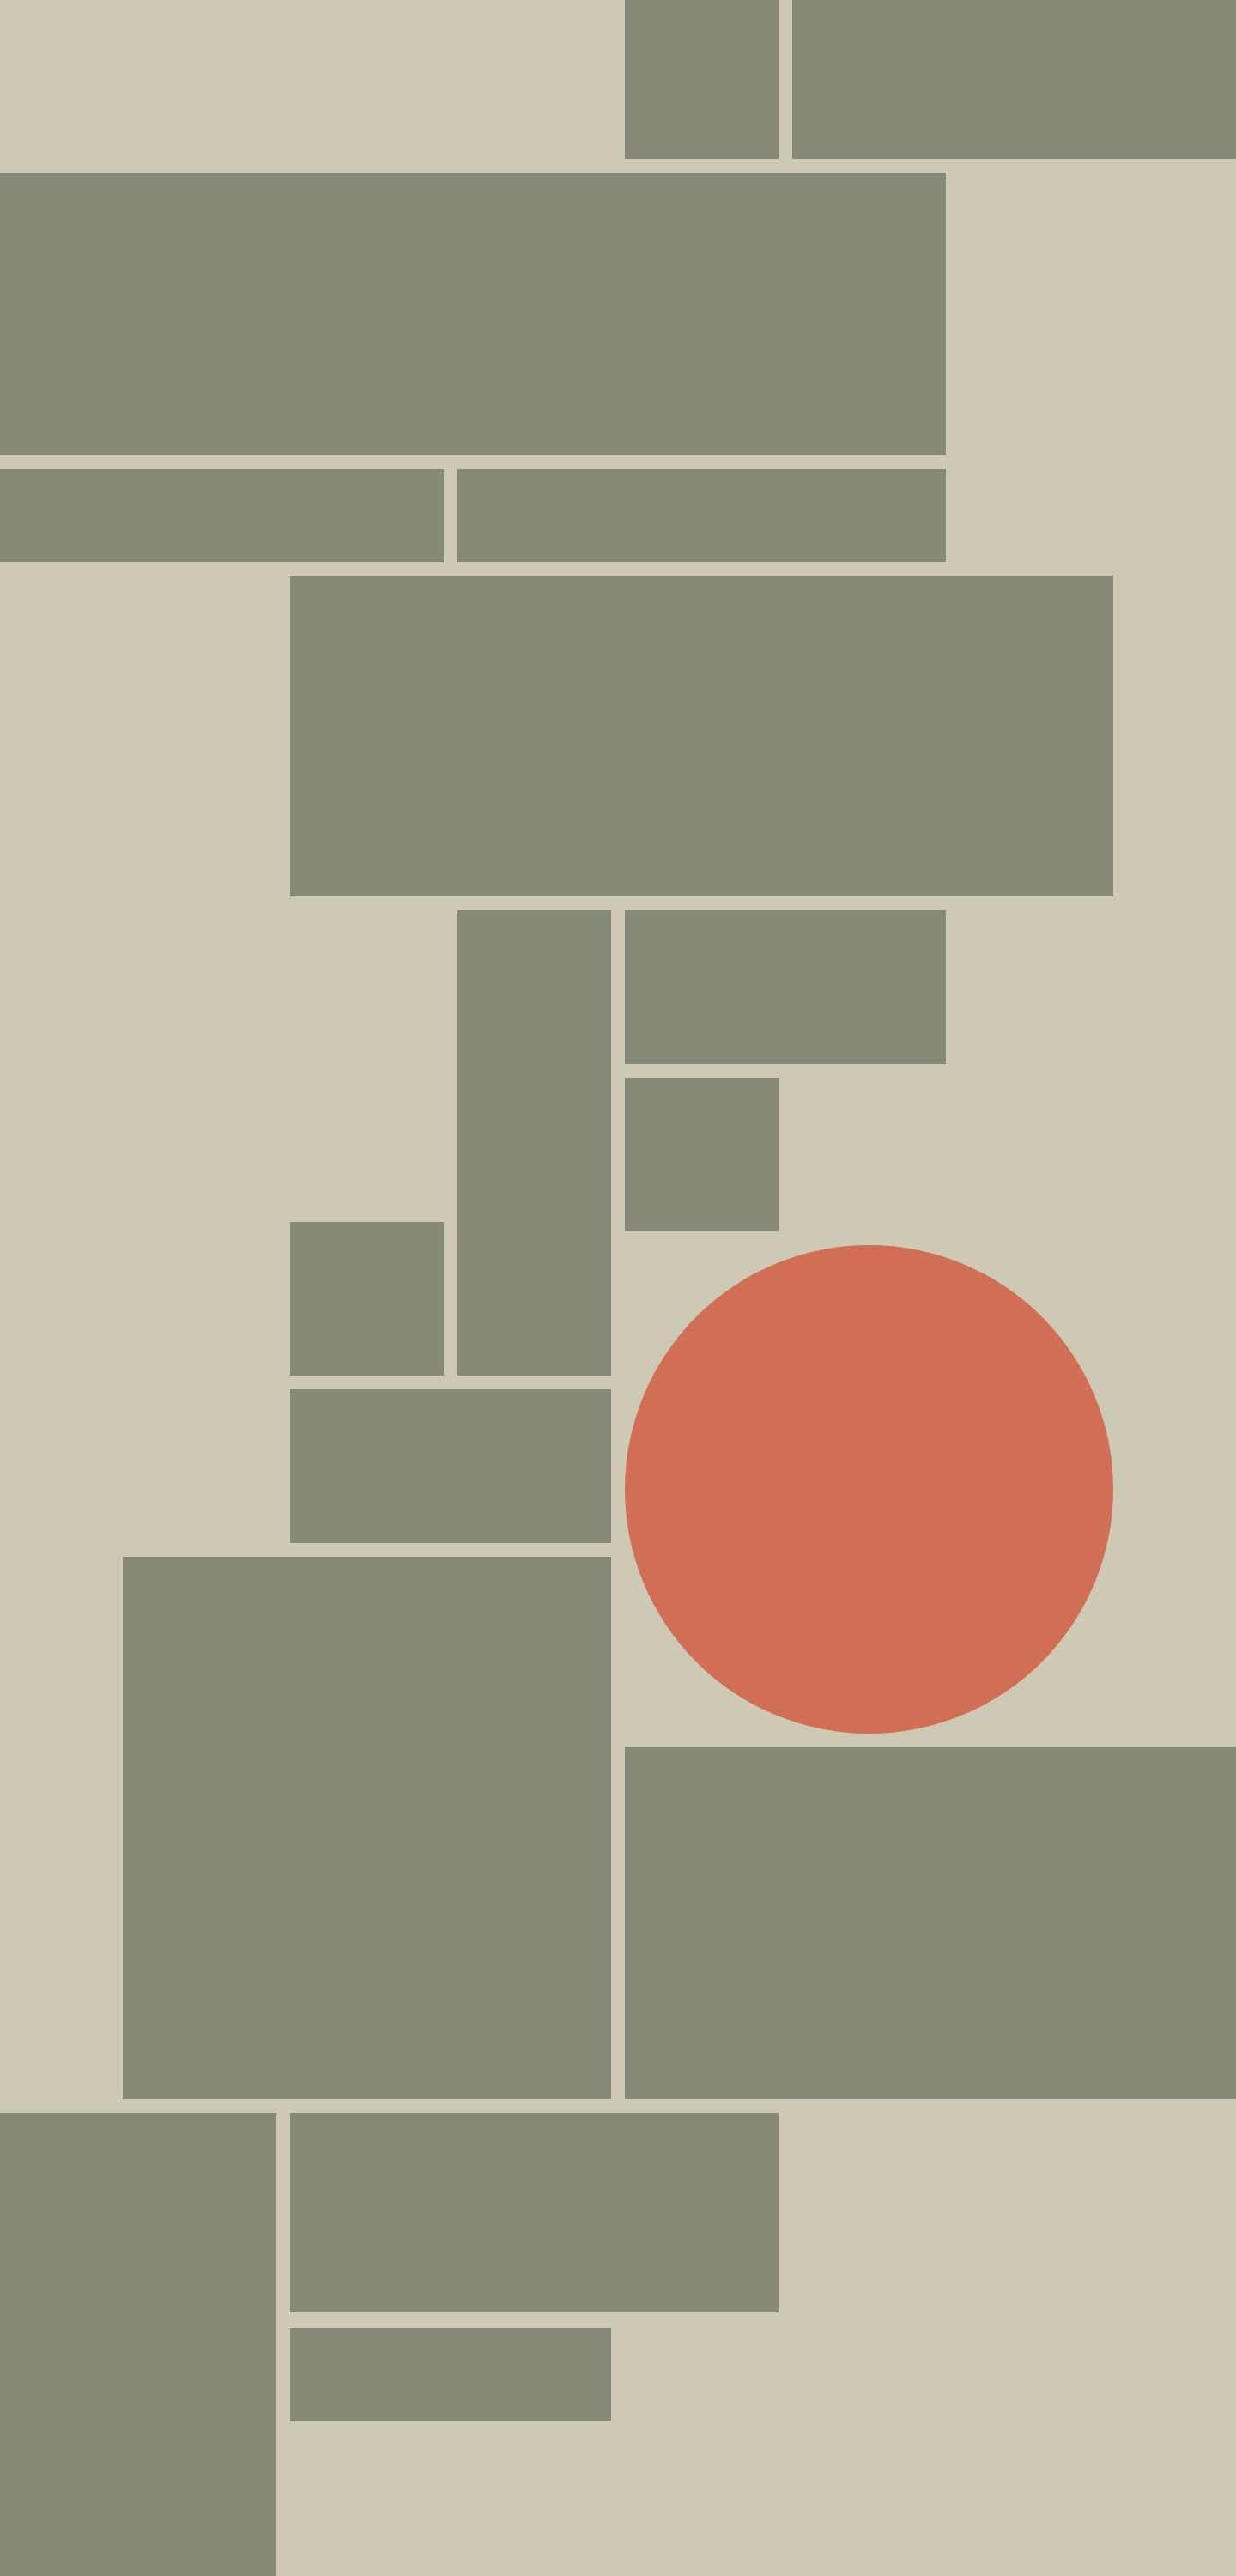 sage rectangles and orange circle